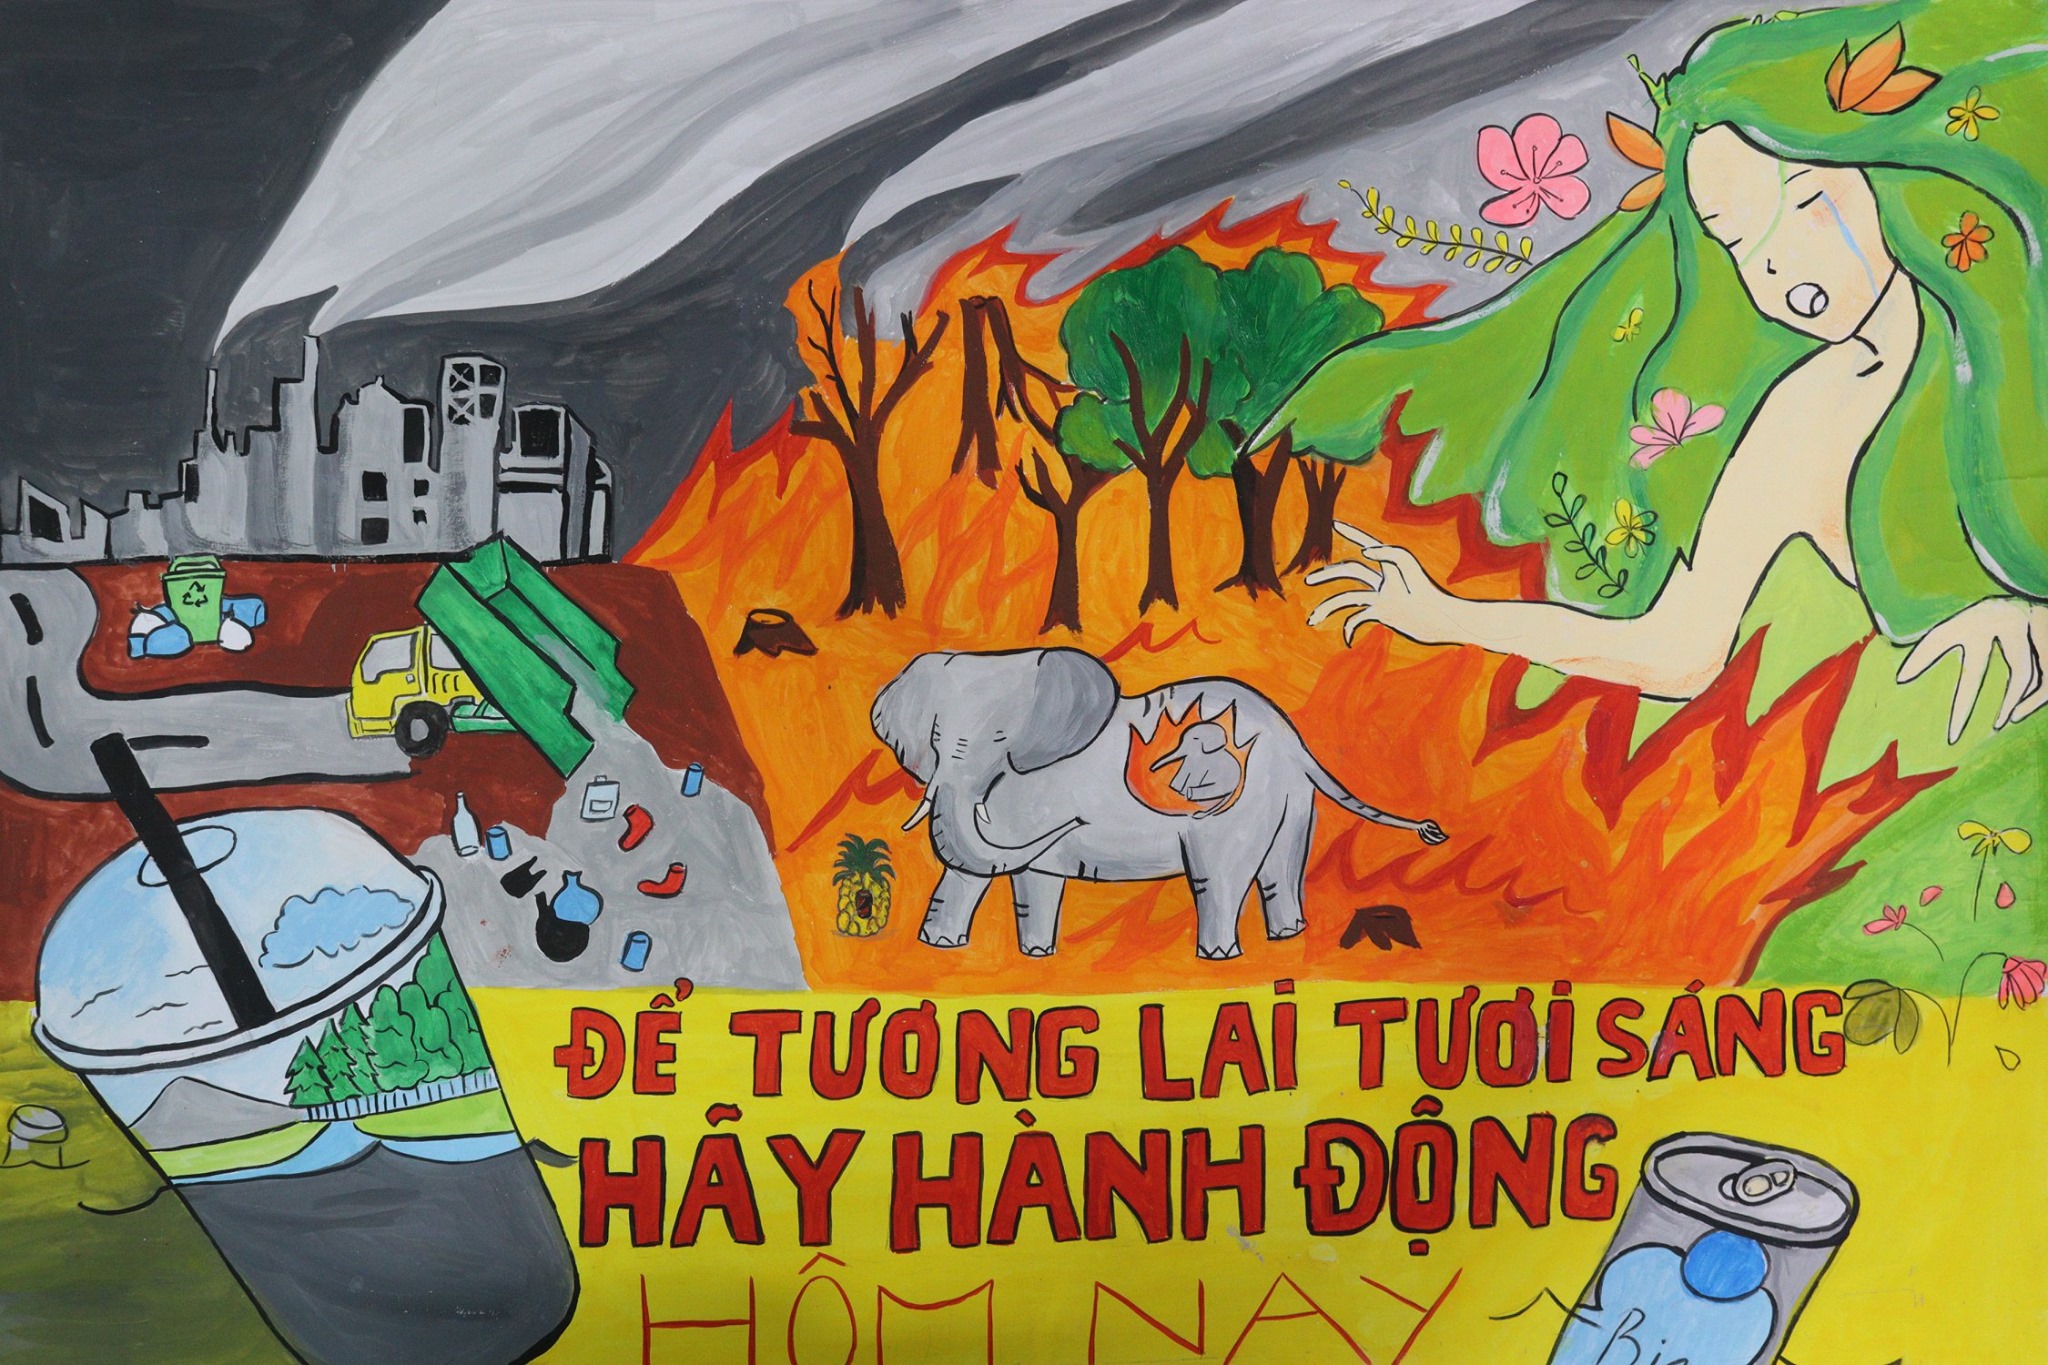 Hãy đến xem bức tranh cổ động lớp 8 đầy tình cảm và sự đoàn kết giữa các bạn học. Từng nét vẽ truyền tải thông điệp gia tăng lòng yêu nước và chung tay xây dựng tương lai sáng tại Việt Nam.